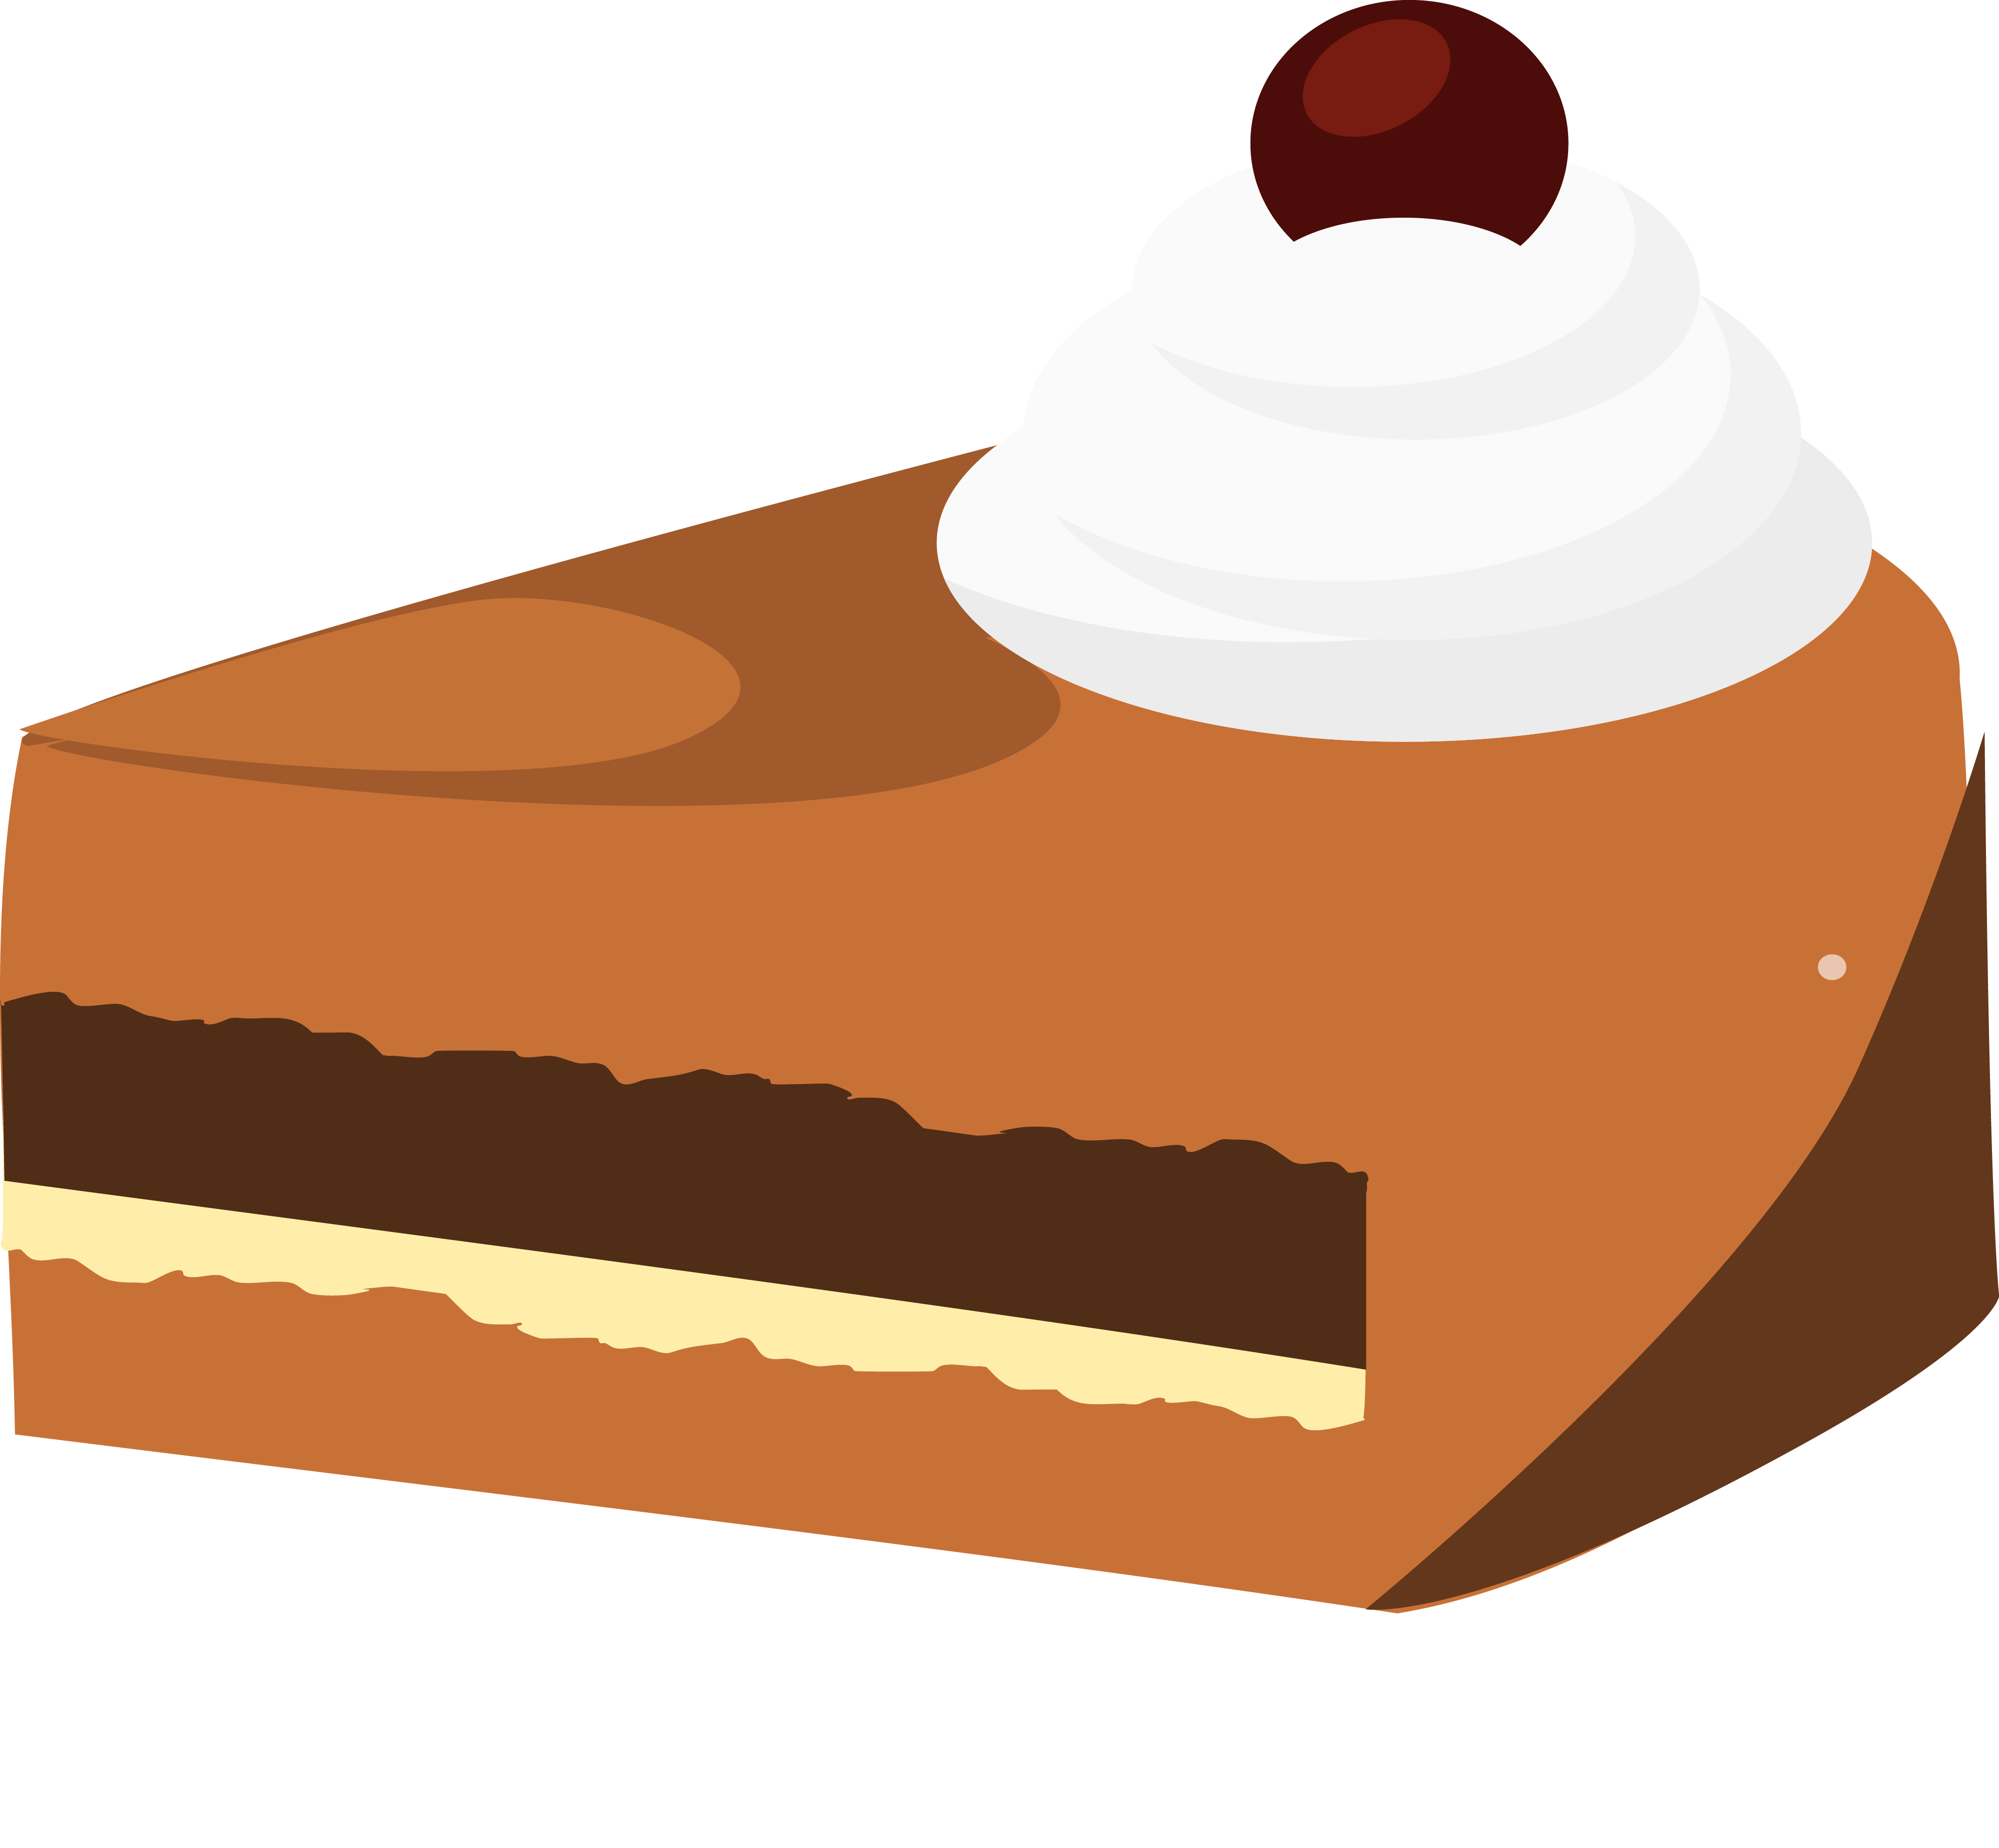 Muffin Bxe1Nh Birthday Cake Cartoon Torte Clipart